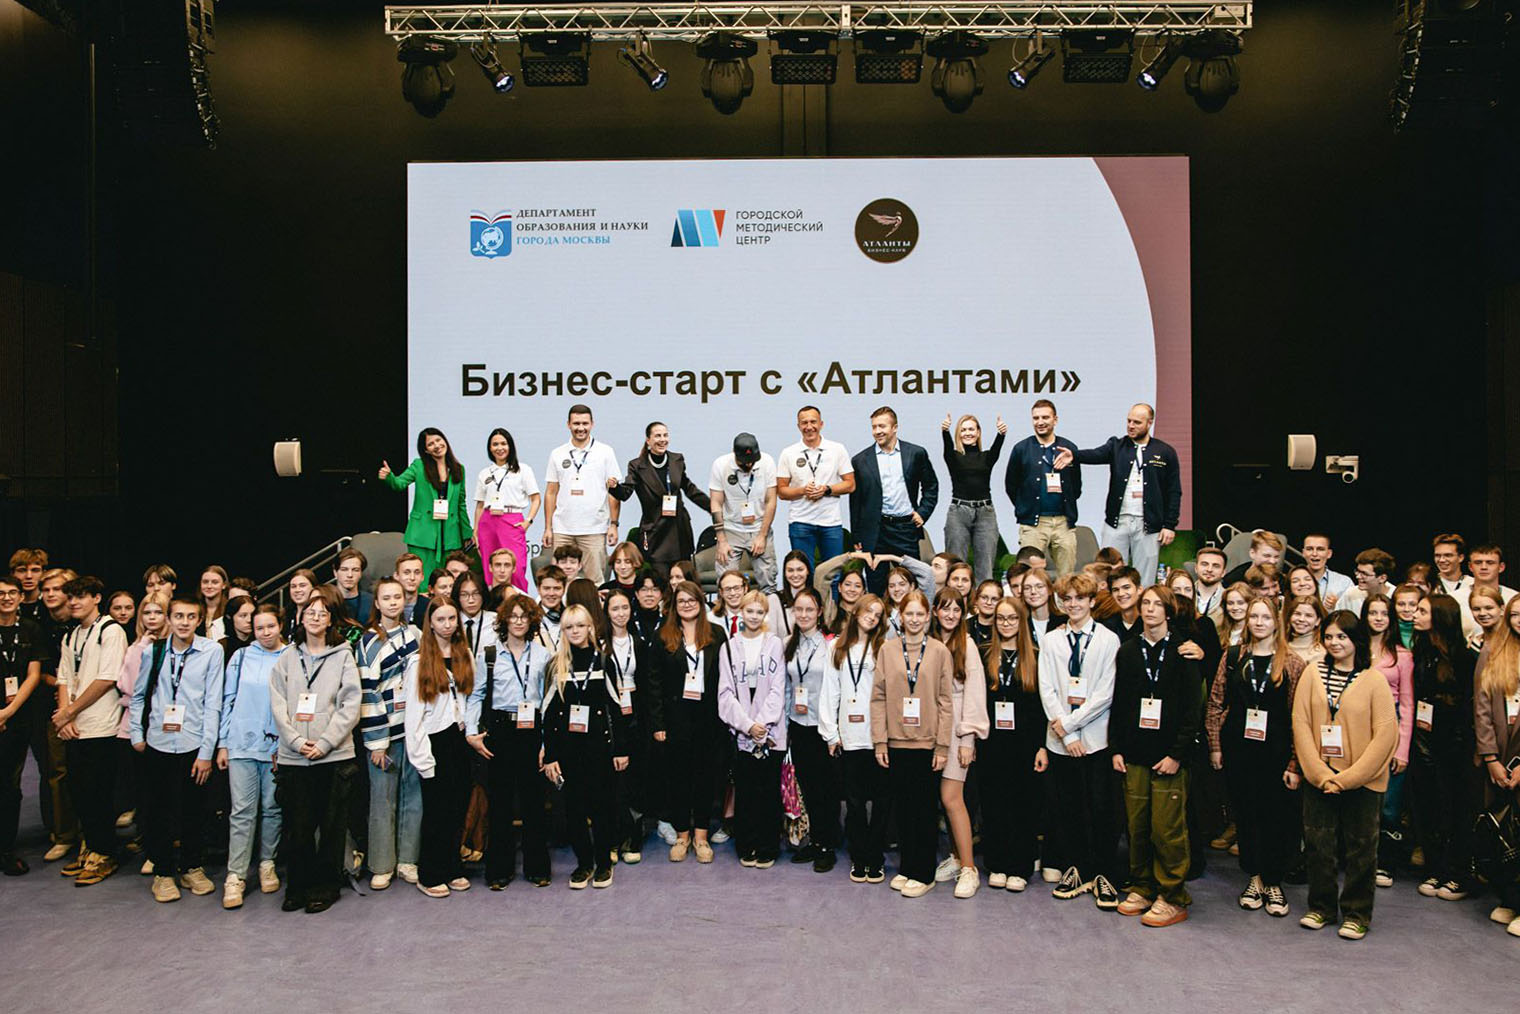 Участники конференции «Бизнес-старт с „Атлантами“». Источник: mos.ru